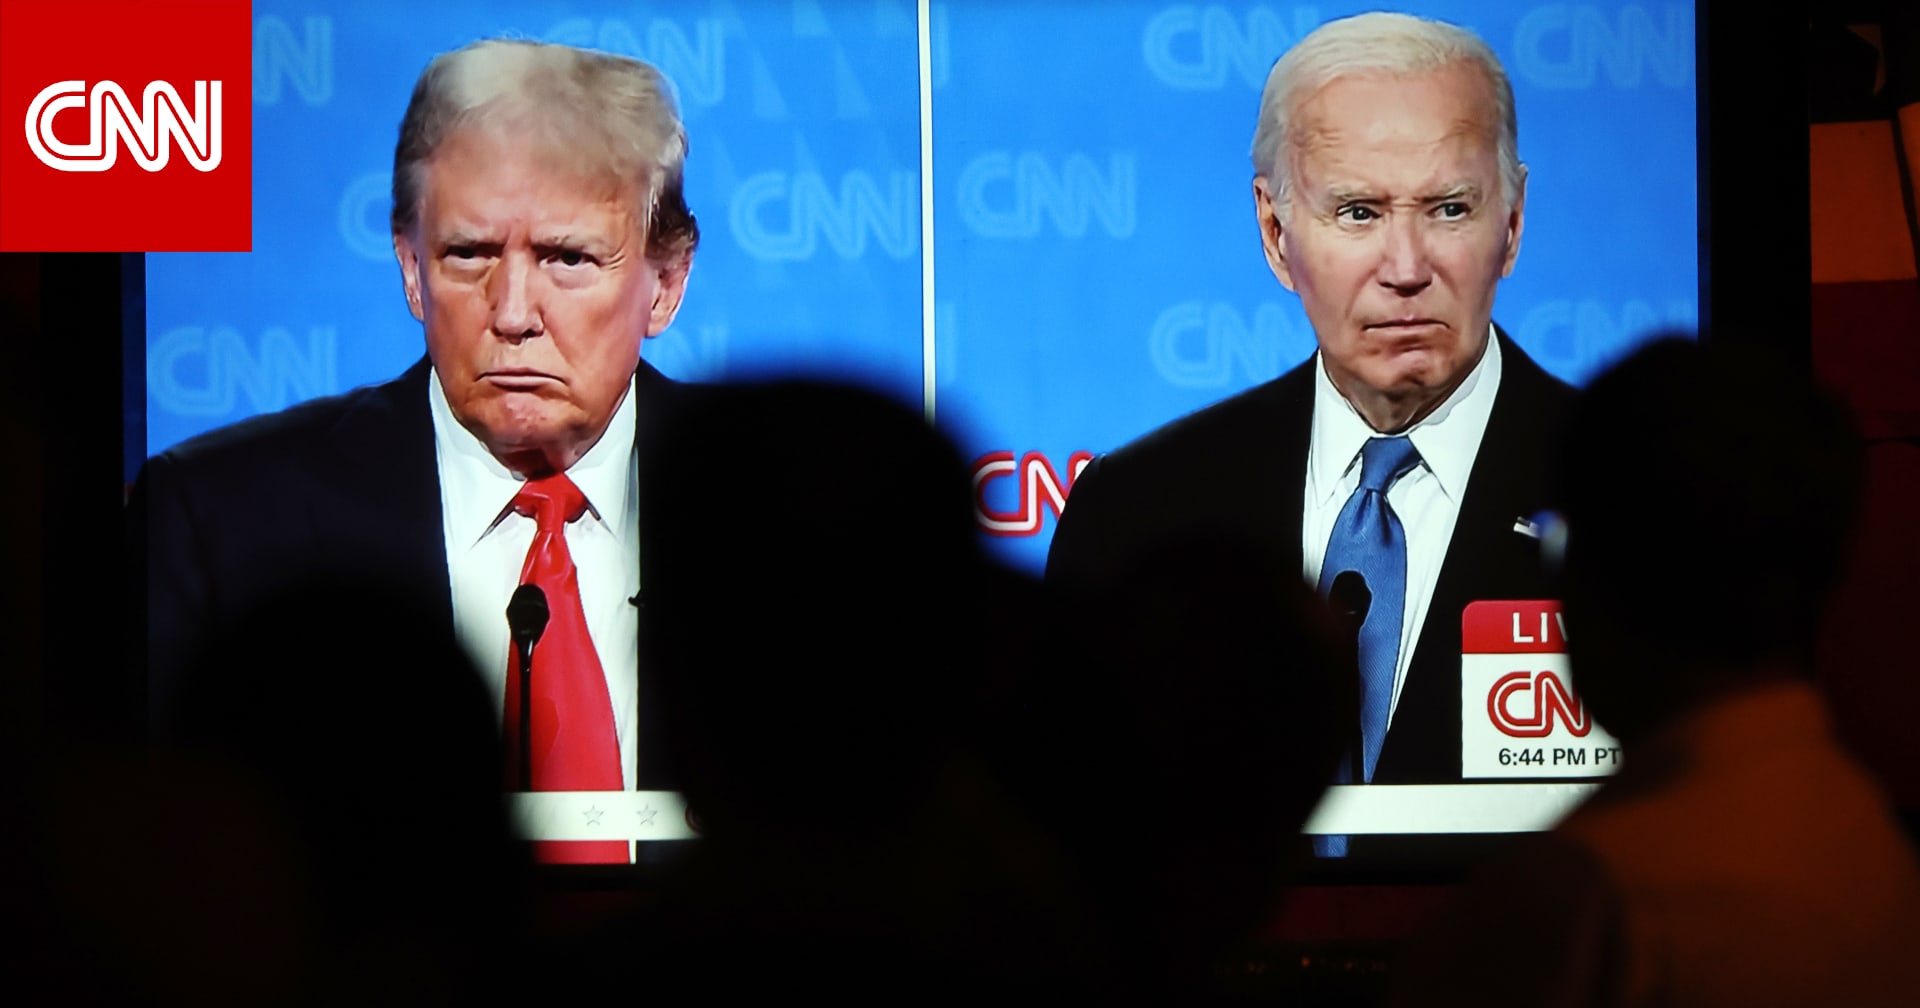 من المنتصر بين ترامب وبايدن؟ تفاعل وسجال بعد مناظرة CNN